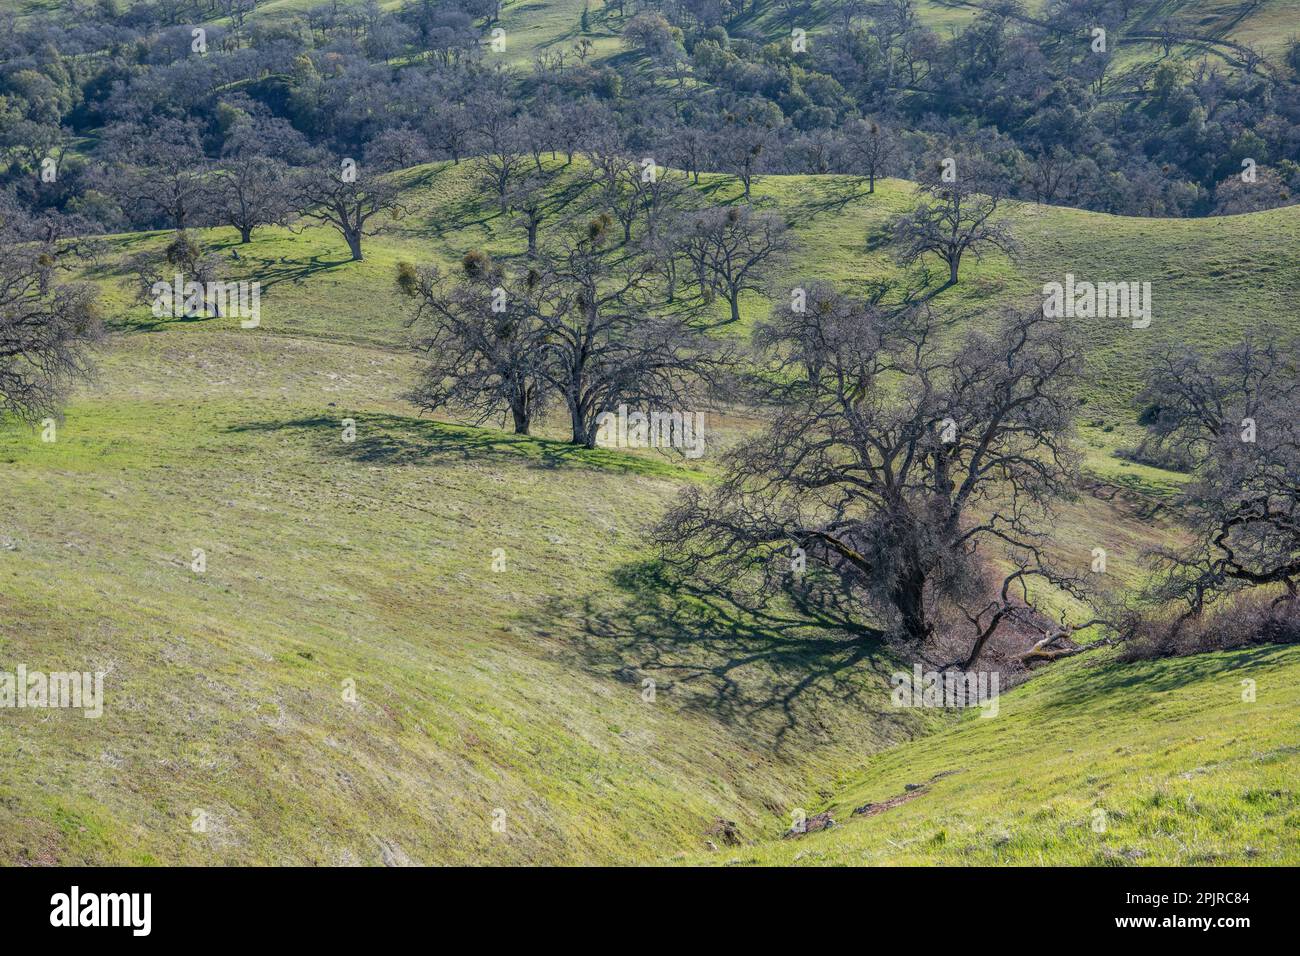 Die Landschaft und die sanften Hügel der kalifornischen Landschaft, die Savanne aus Eichen ist übersät mit Eichen. Stockfoto